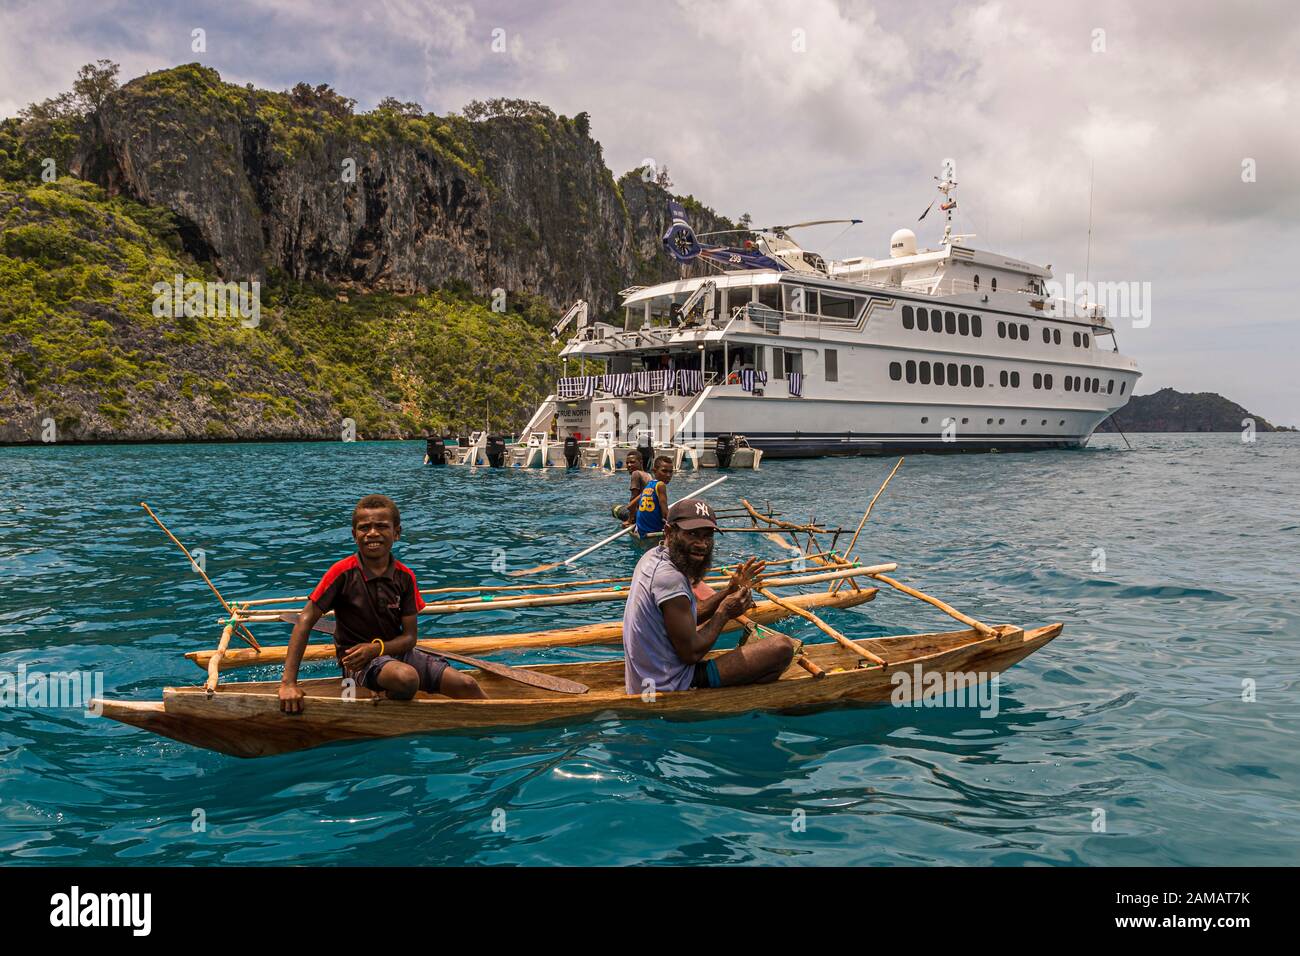 Outrigger Canoe di fronte al vero Nord a Panasia Island, Papua Nuova Guinea. Le canoe Outrigger non sono limitate nella loro manovrabilità nelle acque sopra i coralli. Il vero Nord, d'altra parte, deve navigare molto attentamente nonostante la bassa tirata Foto Stock